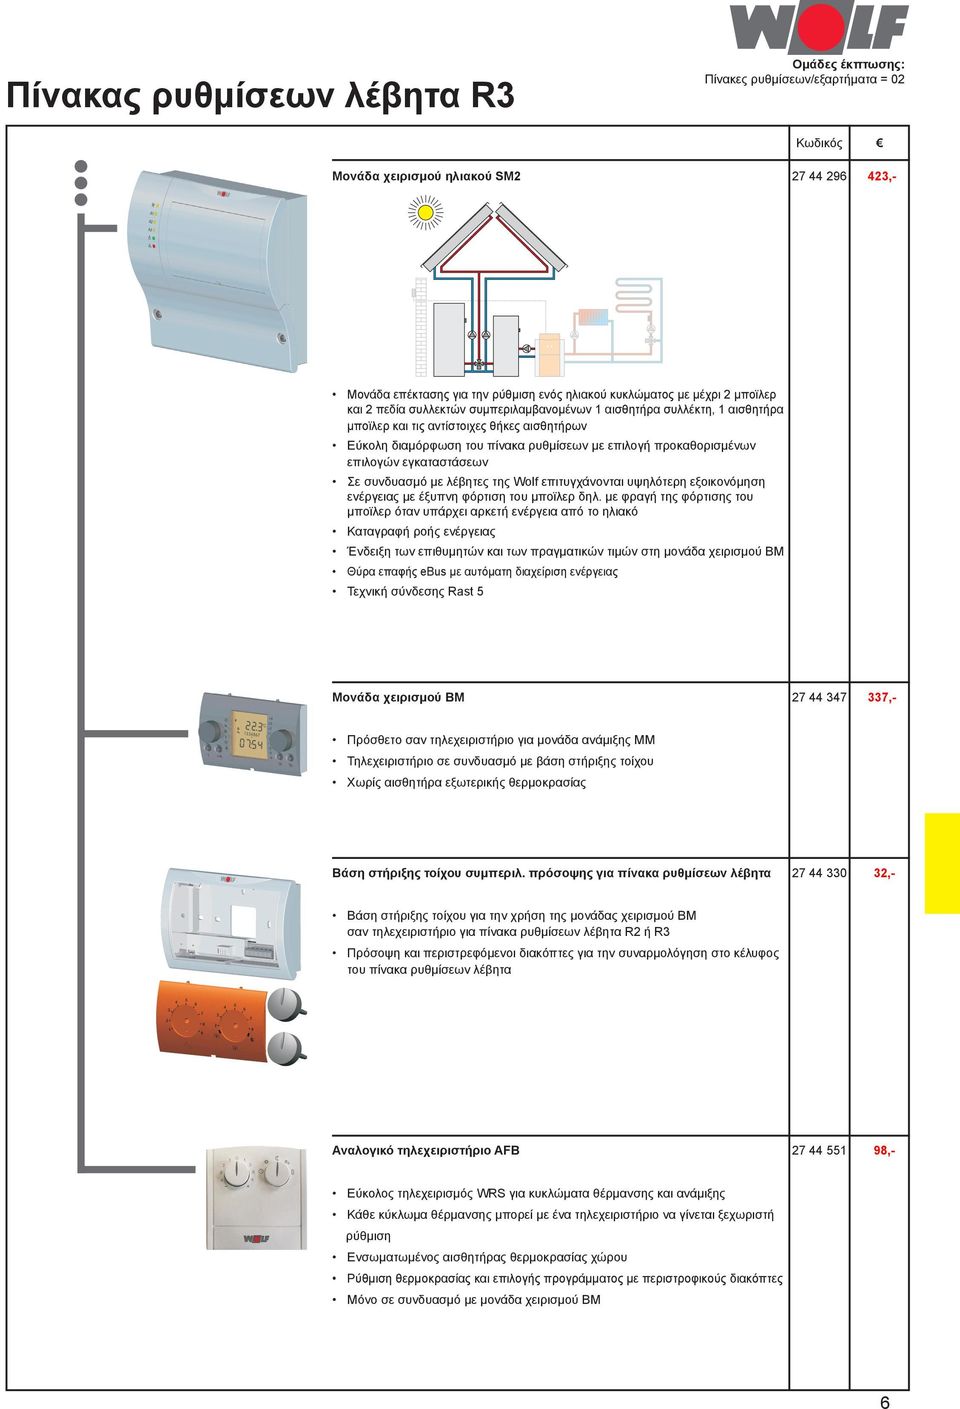 Τηλεχειριστήριο σε συνδυασμό με βάση στήριξης τοίχου Χωρίς αισθητήρα εξωτερικής θερμοκρασίας Βάση στήριξης τοίχου συμπεριλ.